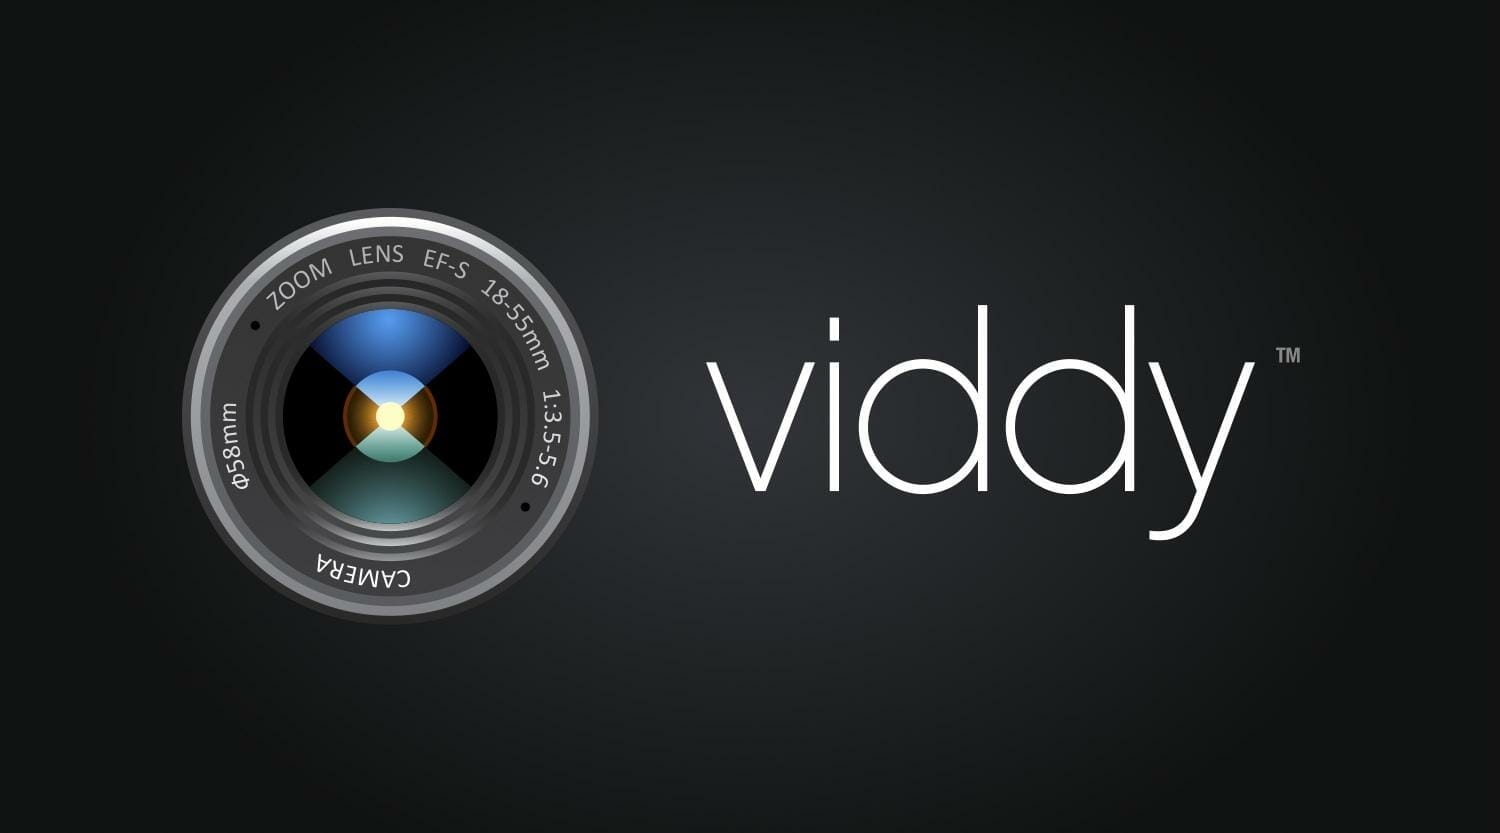 Cómo hacer vídeos con Viddy